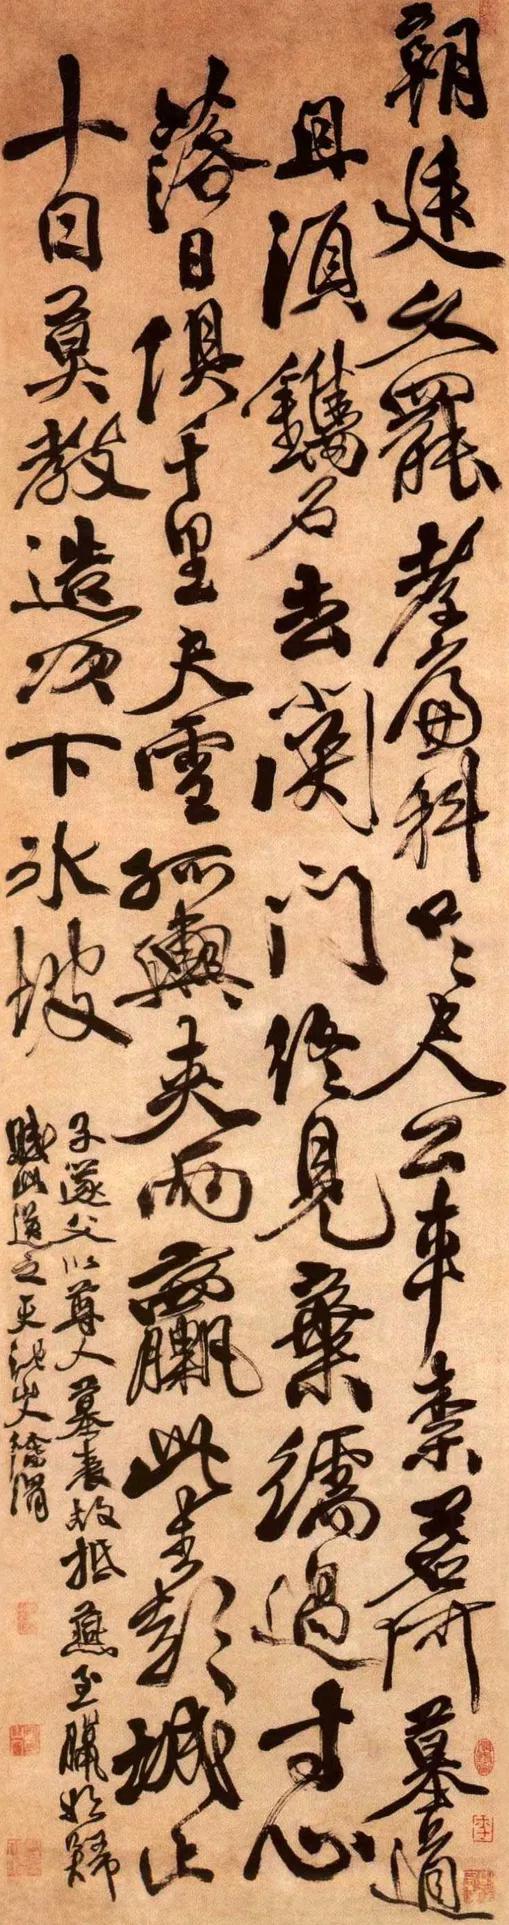 明  徐渭《墓表赋》 纸本墨笔 163.7x43cm  北京故宫博物院藏